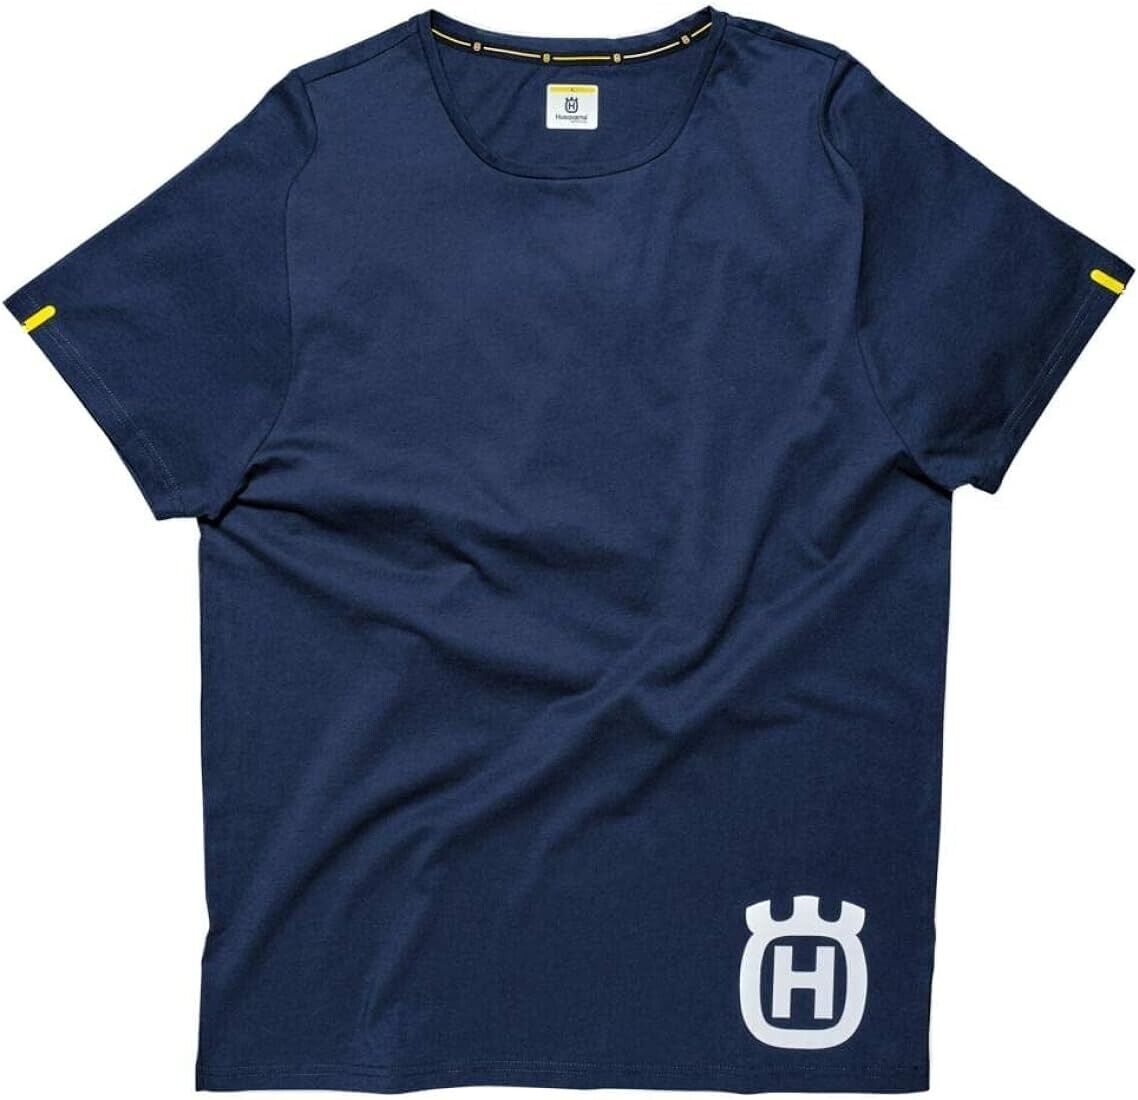 Husqvarna Inventor T Shirt